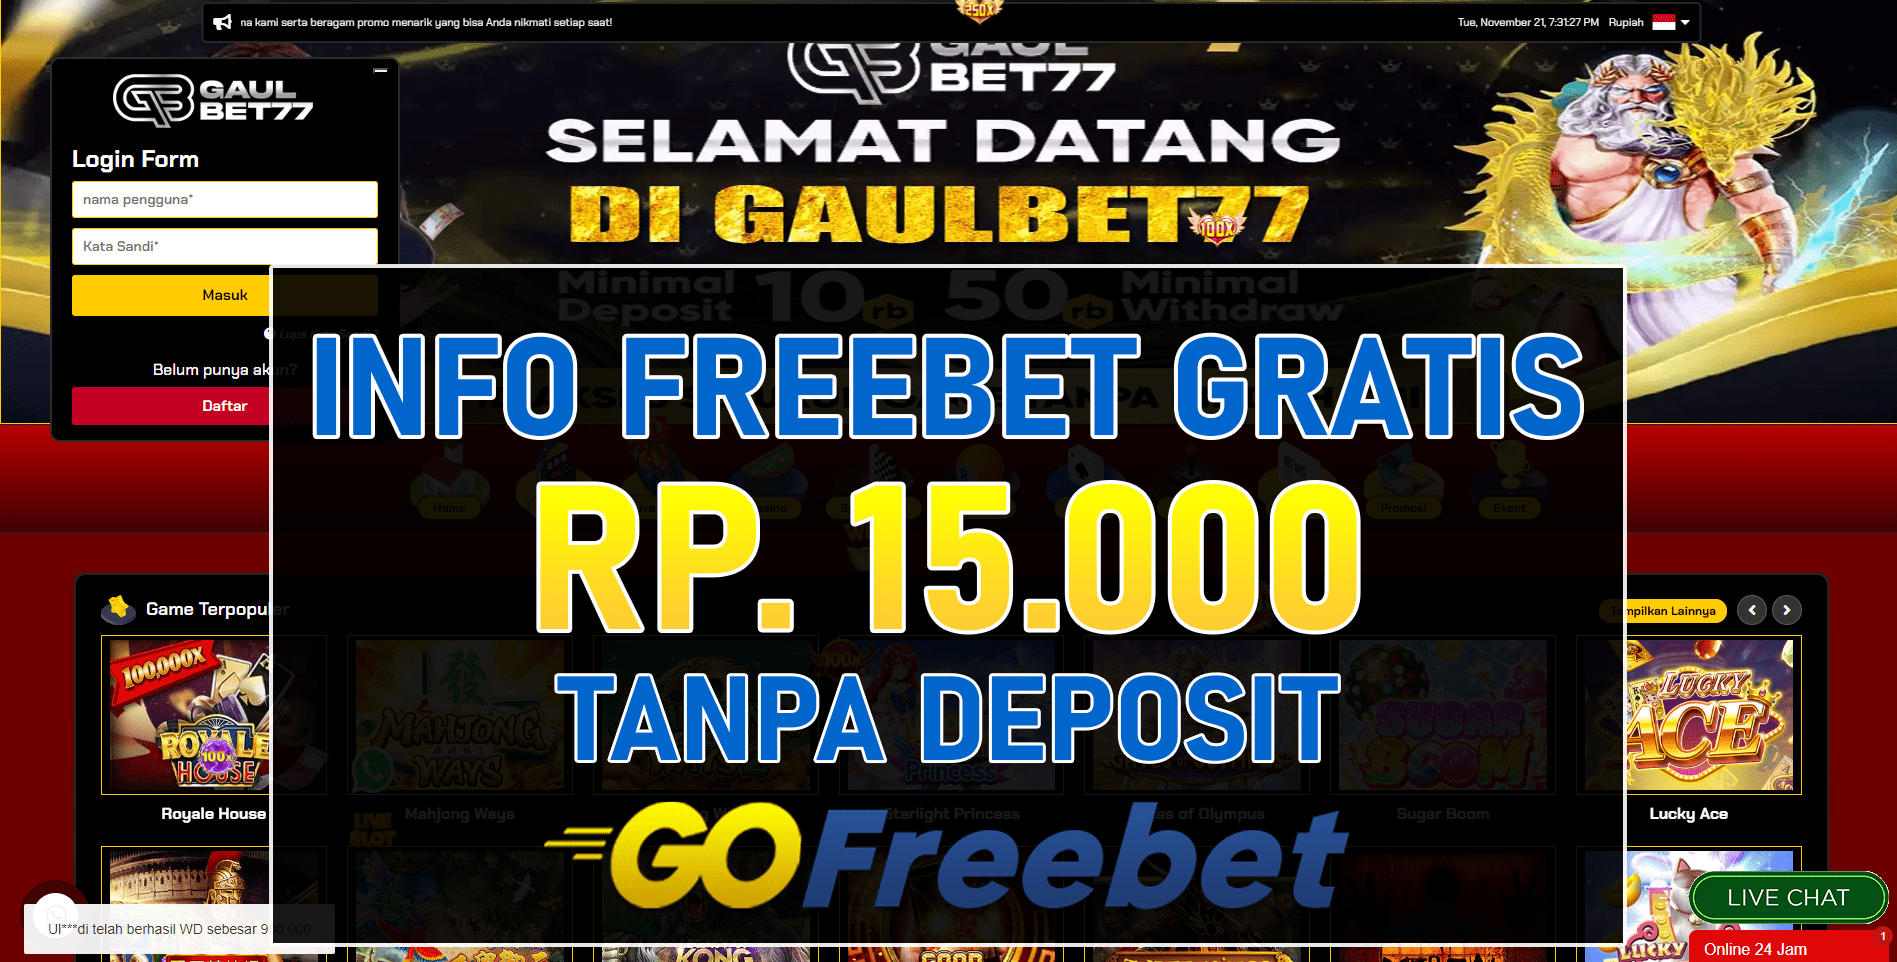 Gaulbet77 Freebet Gratis Rp 15.000 Tanpa Deposit